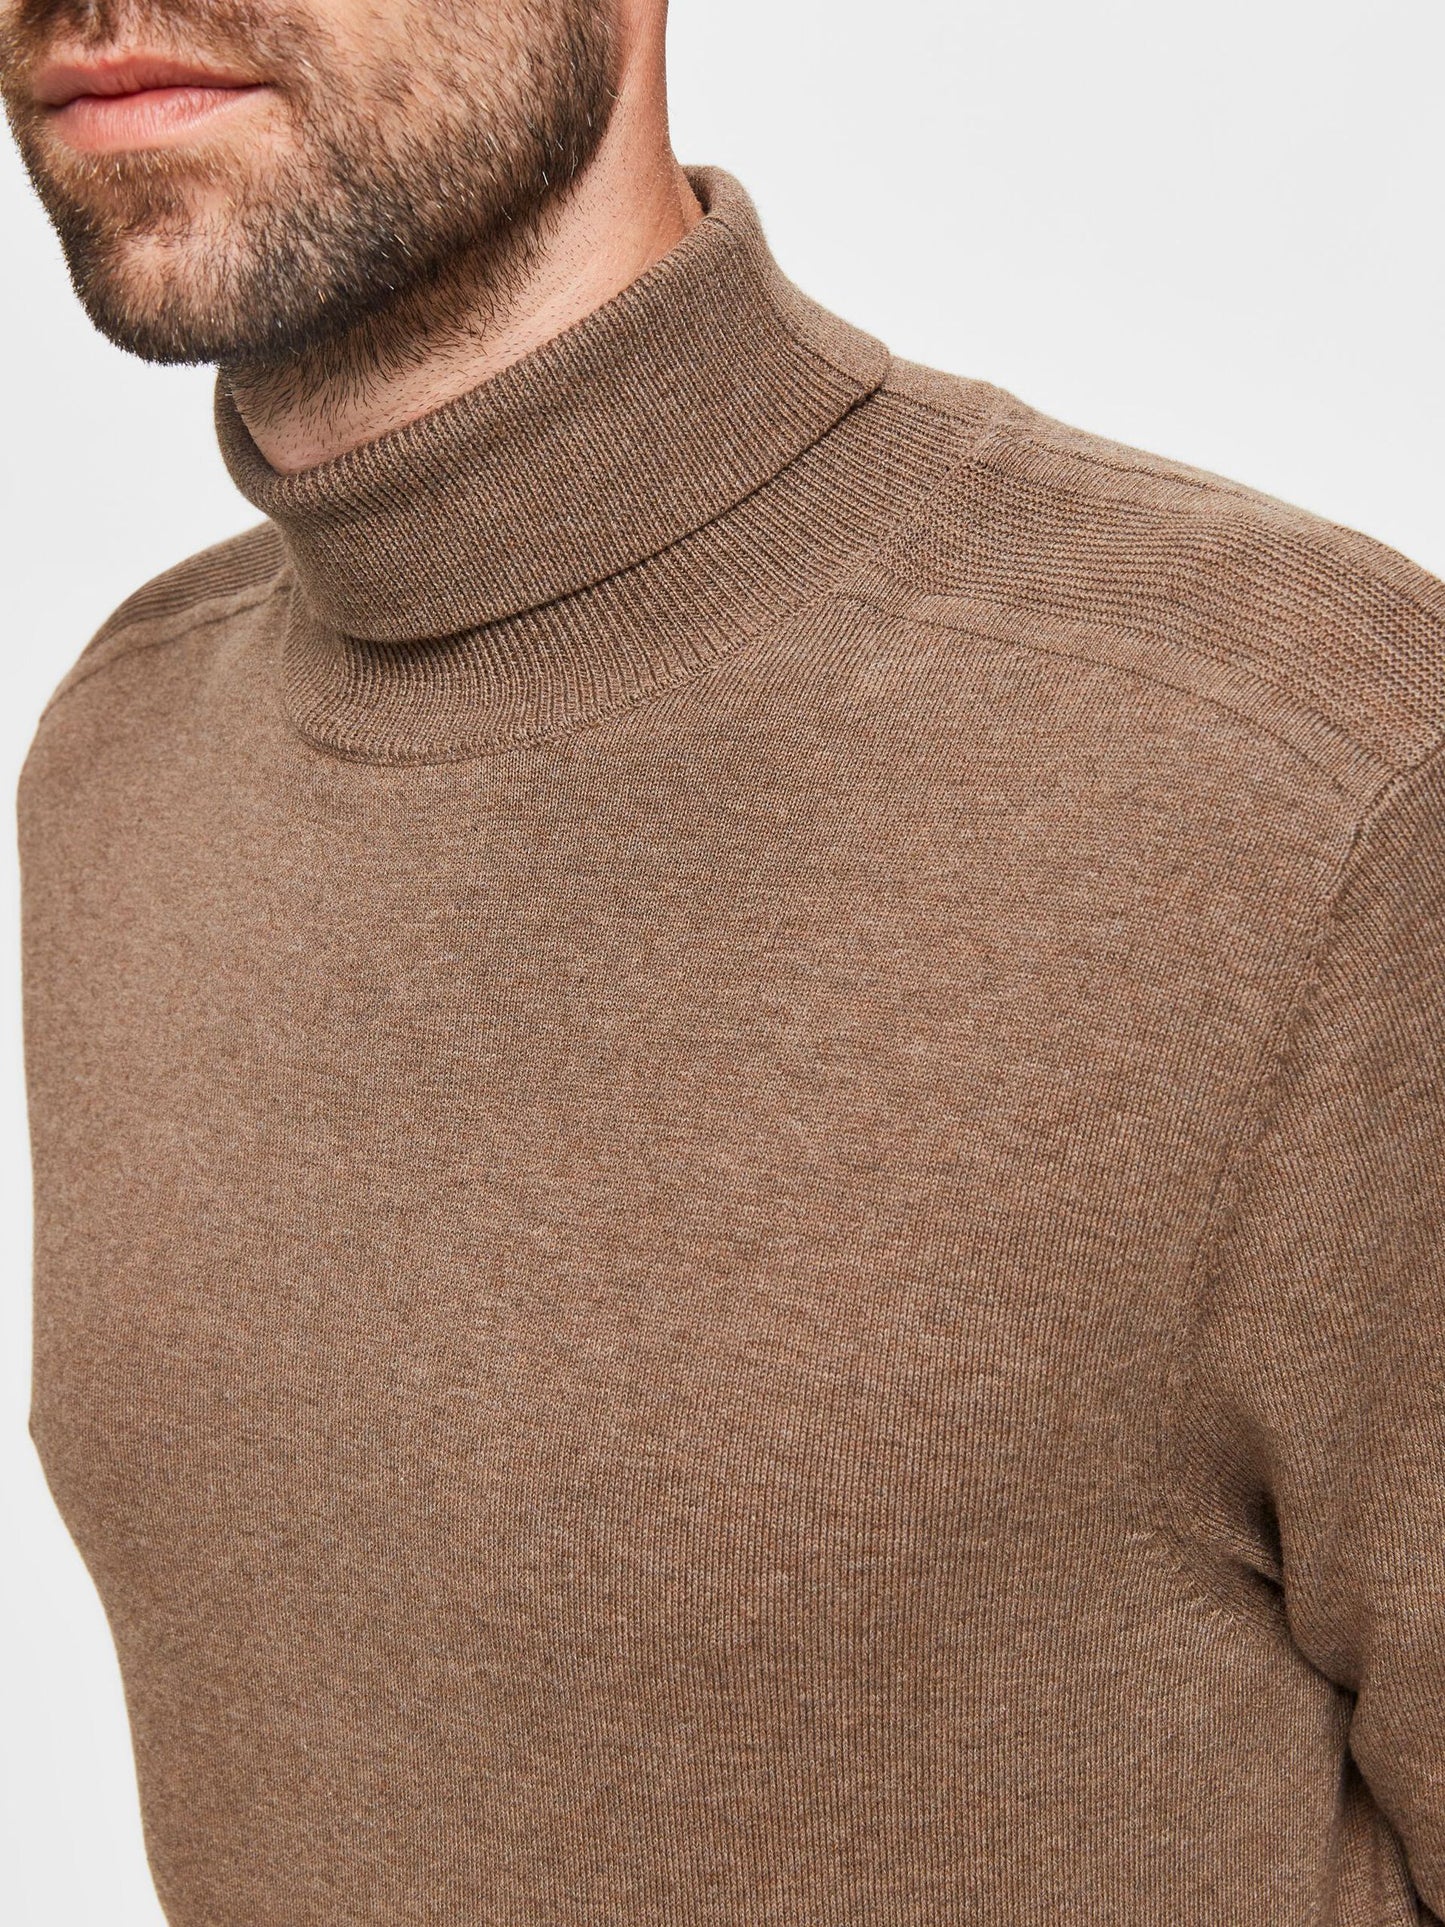 knitted roll neck - teak melange